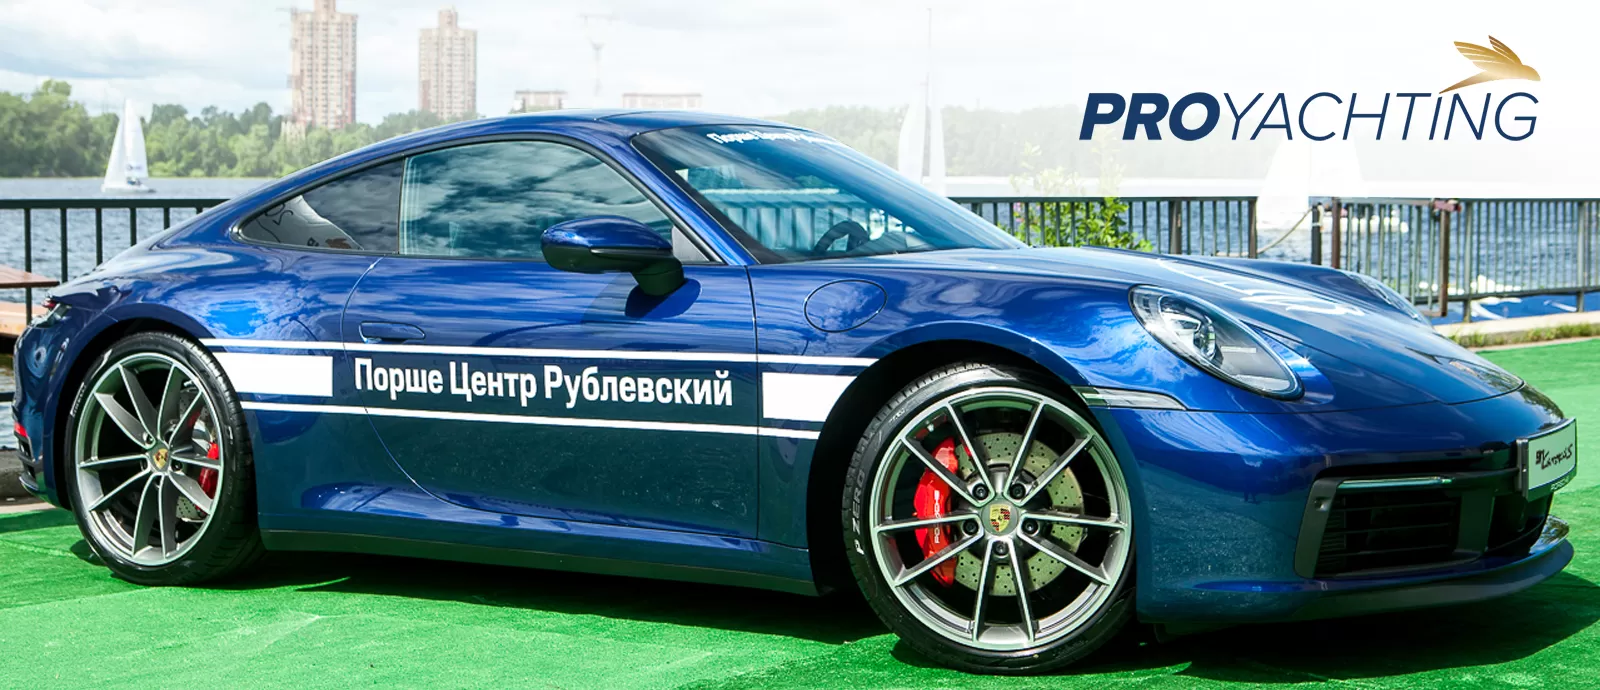 Динамика в жизни и бизнесе. Новый Porsche 911 на Skolkovo – PROyachtingCup.